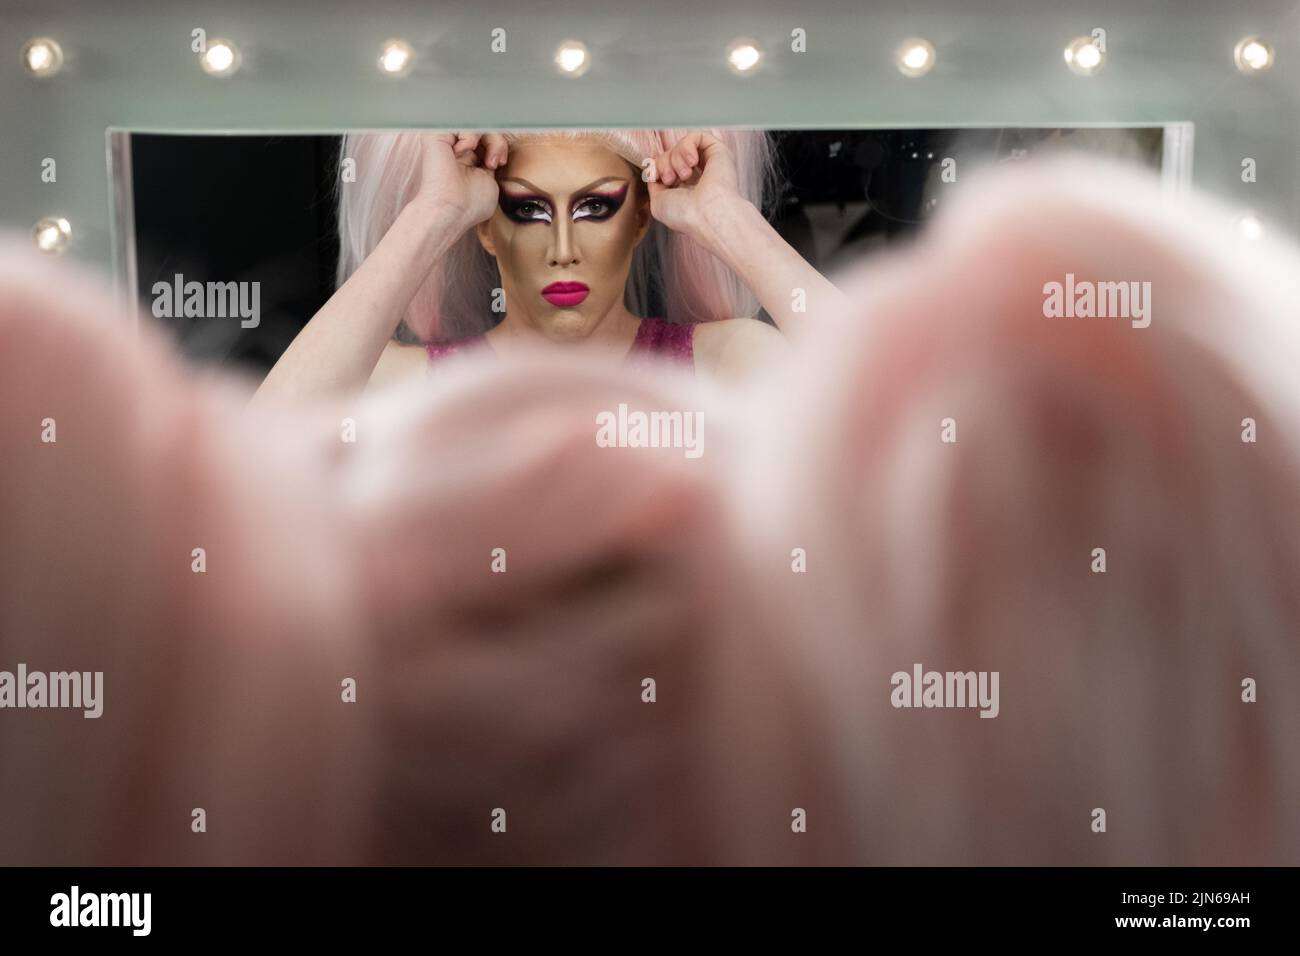 Persona no binaria aplicando maquillaje de la reina del arrastre Backstage, mirando en espejo Foto de stock